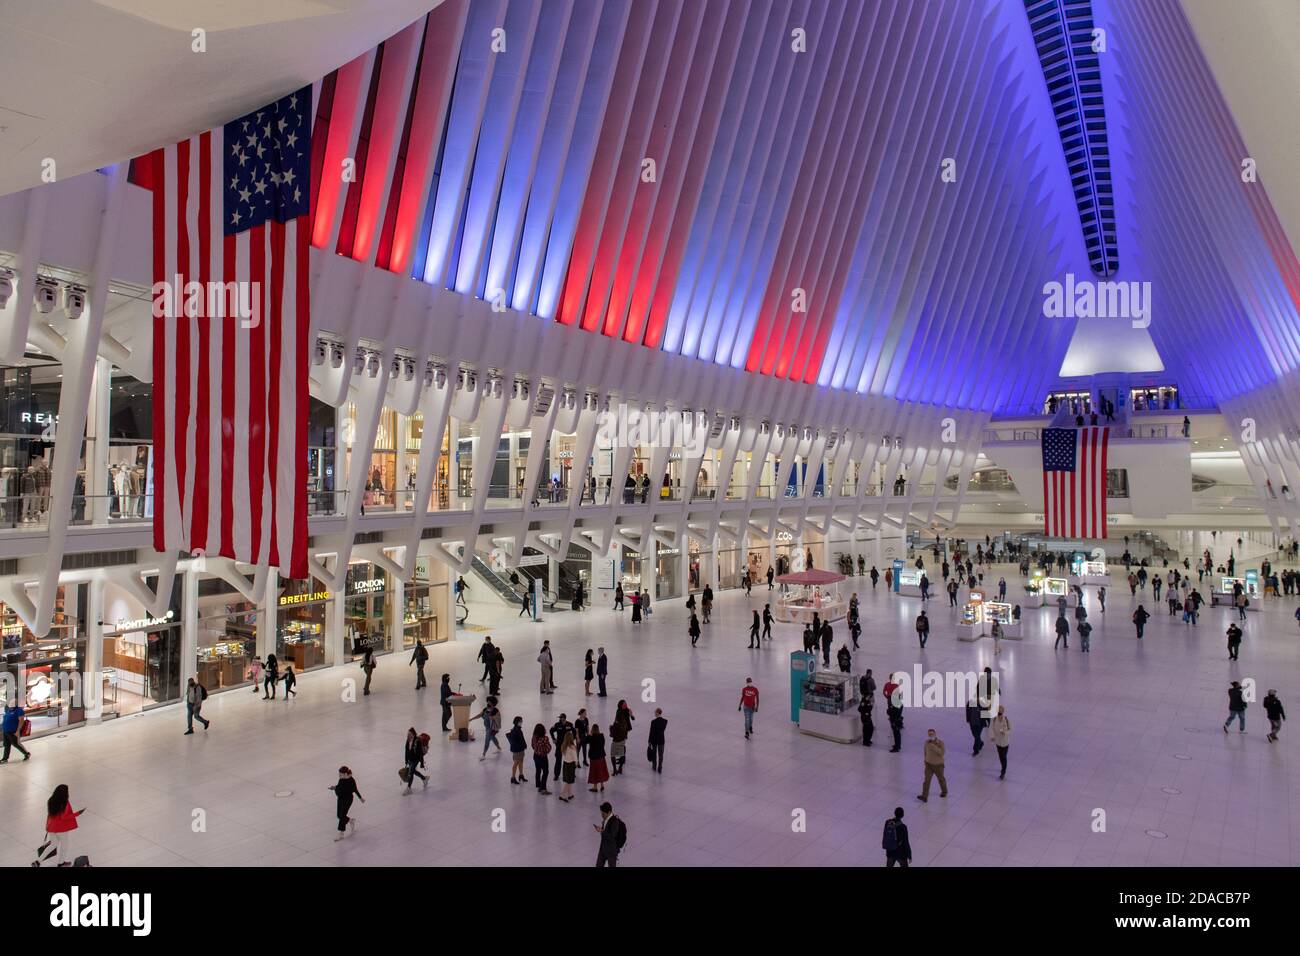 Der Oculus Transit Hub im One World Trade Center schaltet seine neuen LED-Leuchten in Rot, Weiß und Blau zu Ehren des Veterans Day am 10. November 2020 in N ein Stockfoto